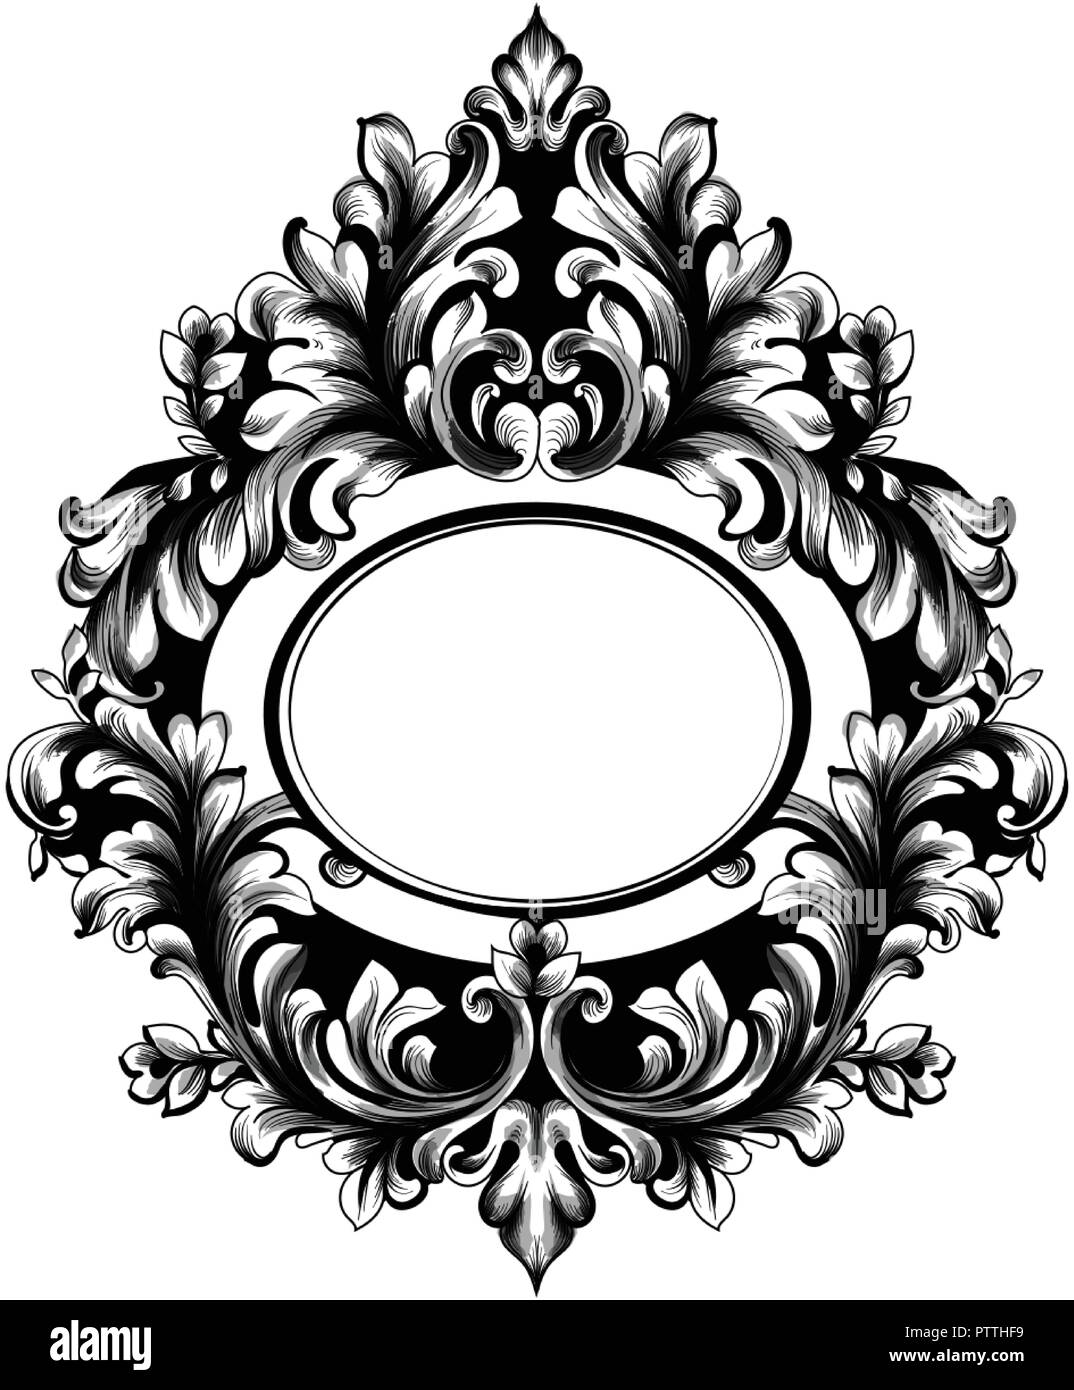 Barocke Ovaler Rahmen Vektor. Französischen Luxus reiche filigranen Ornamenten. Royal Victorian Style spiegel Dekor Stock Vektor